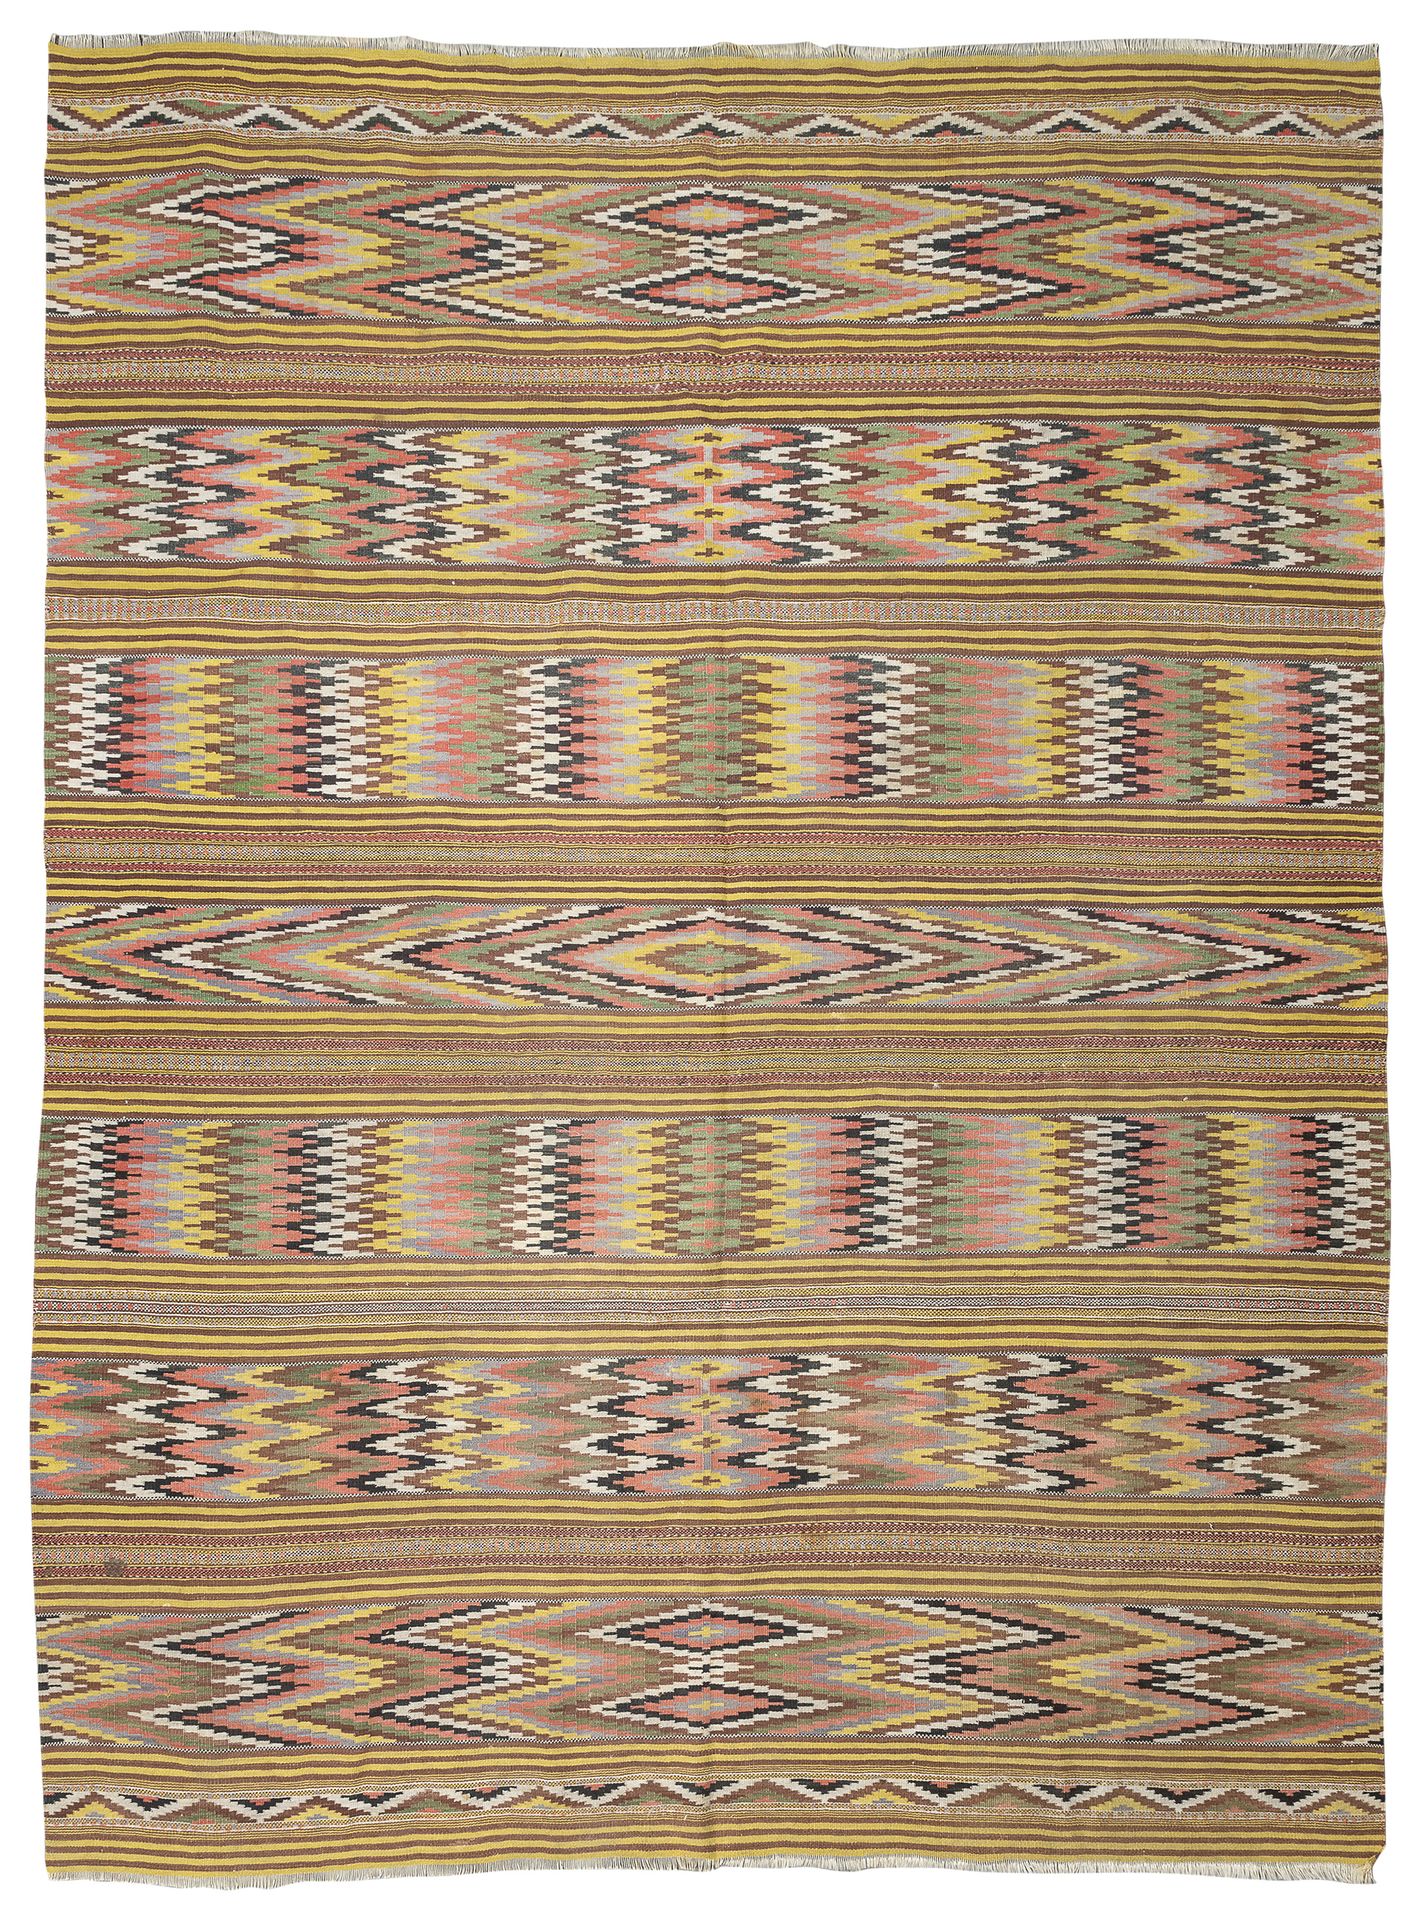 Null 沙达克里姆地毯，20世纪初

有多色火线设计和菱形的菱形边框。

尺寸为330 x 240厘米。